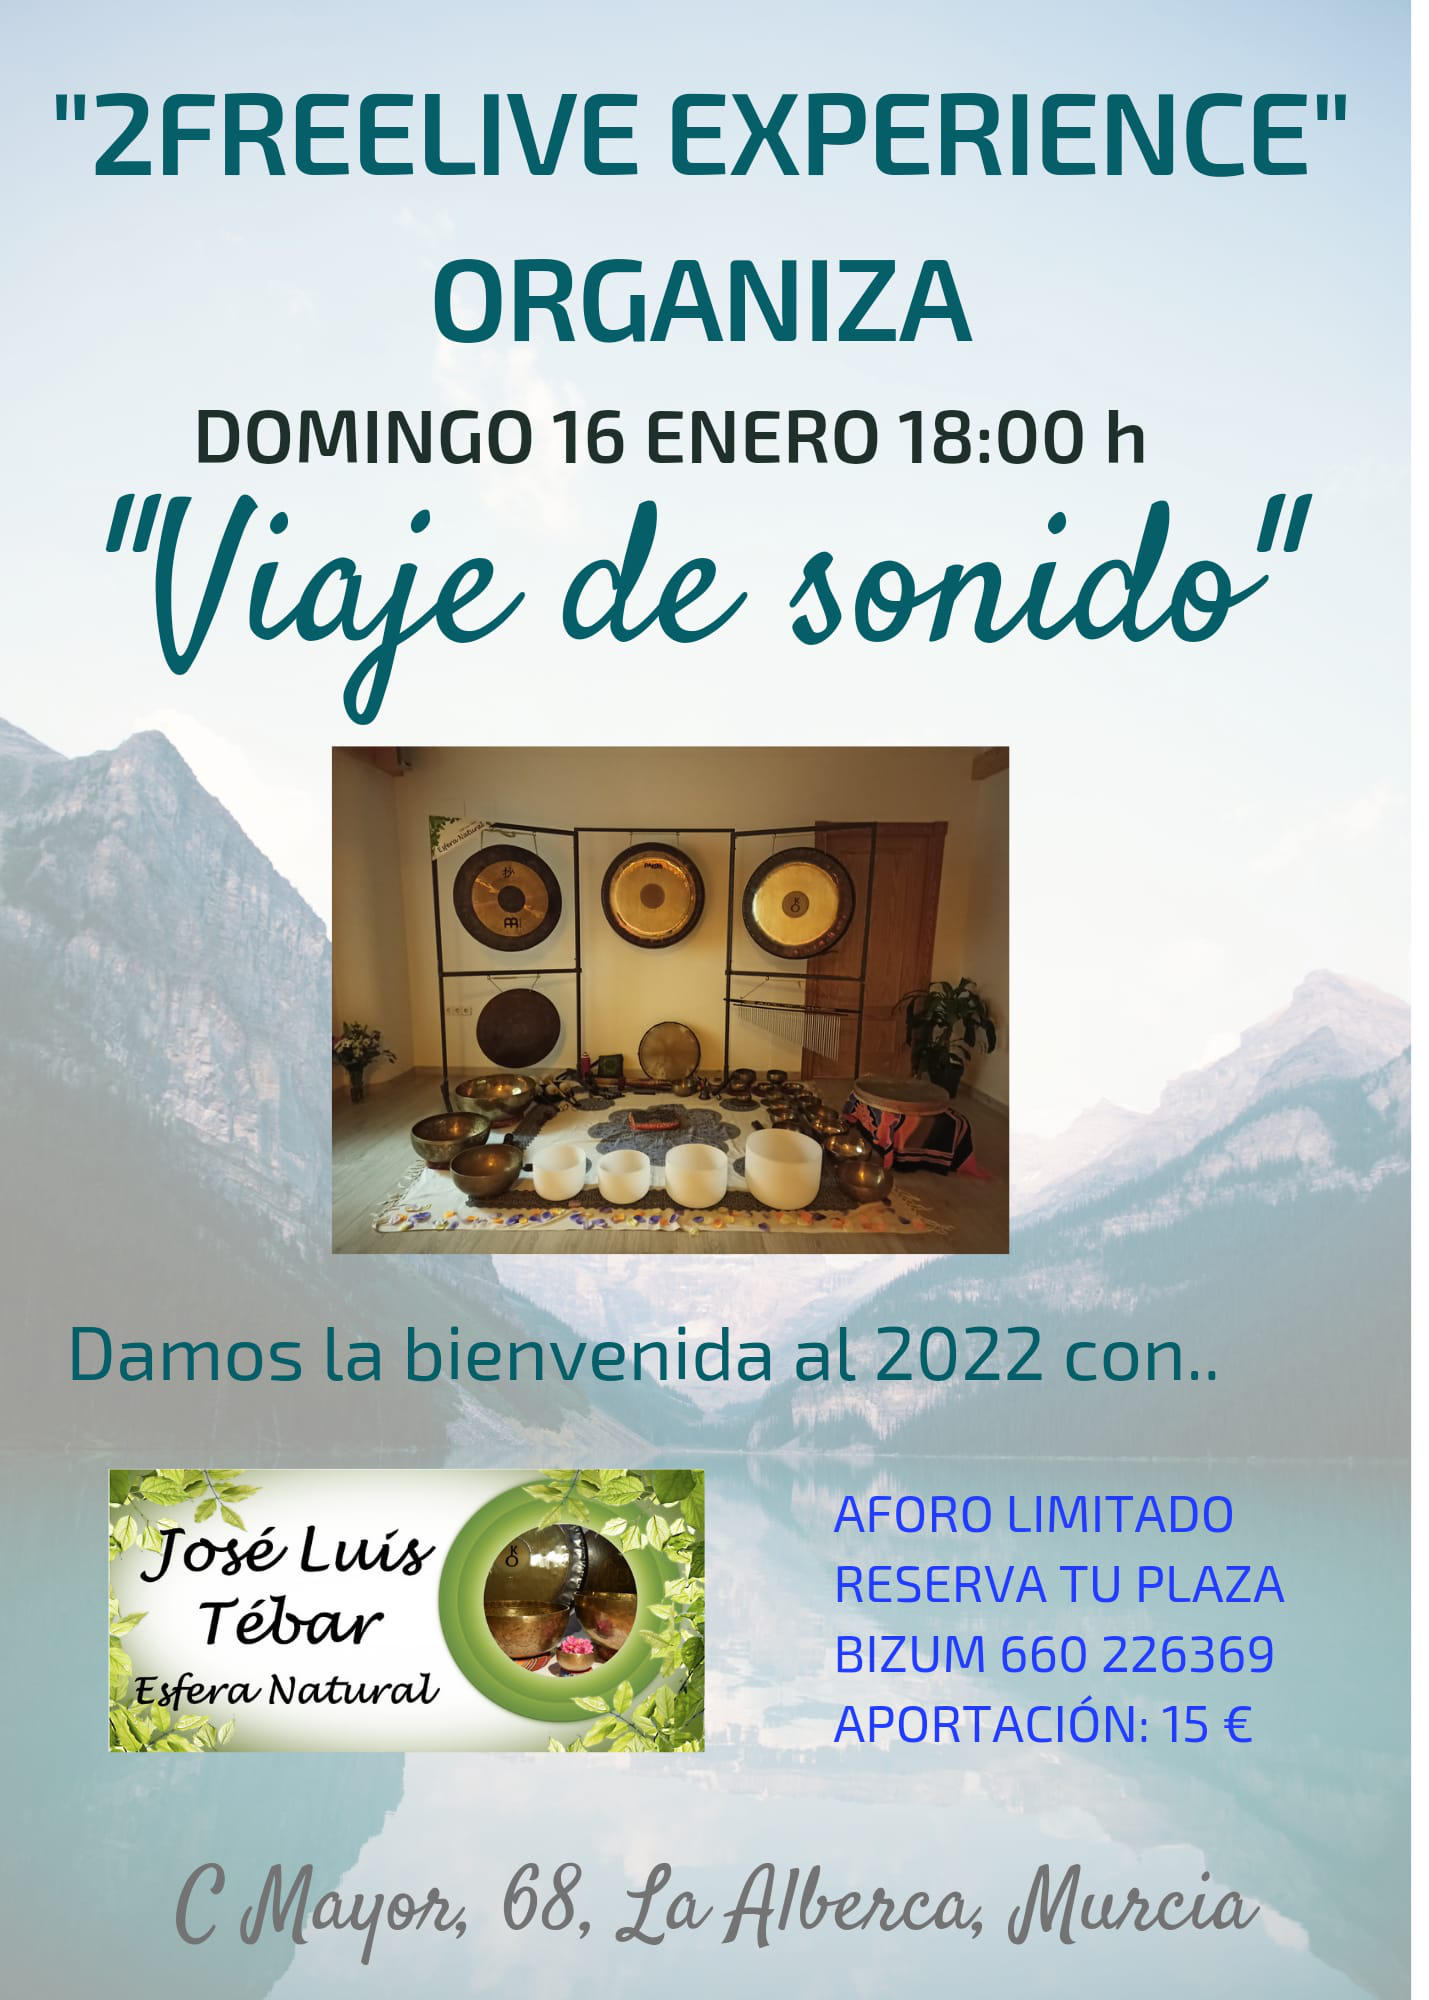 16/01/22 Sábado a las 18:00 - Viaje de sonido con Cuencos Tibetanos y Gongs en 2Freelive Experience en La Alberca (Murcia)